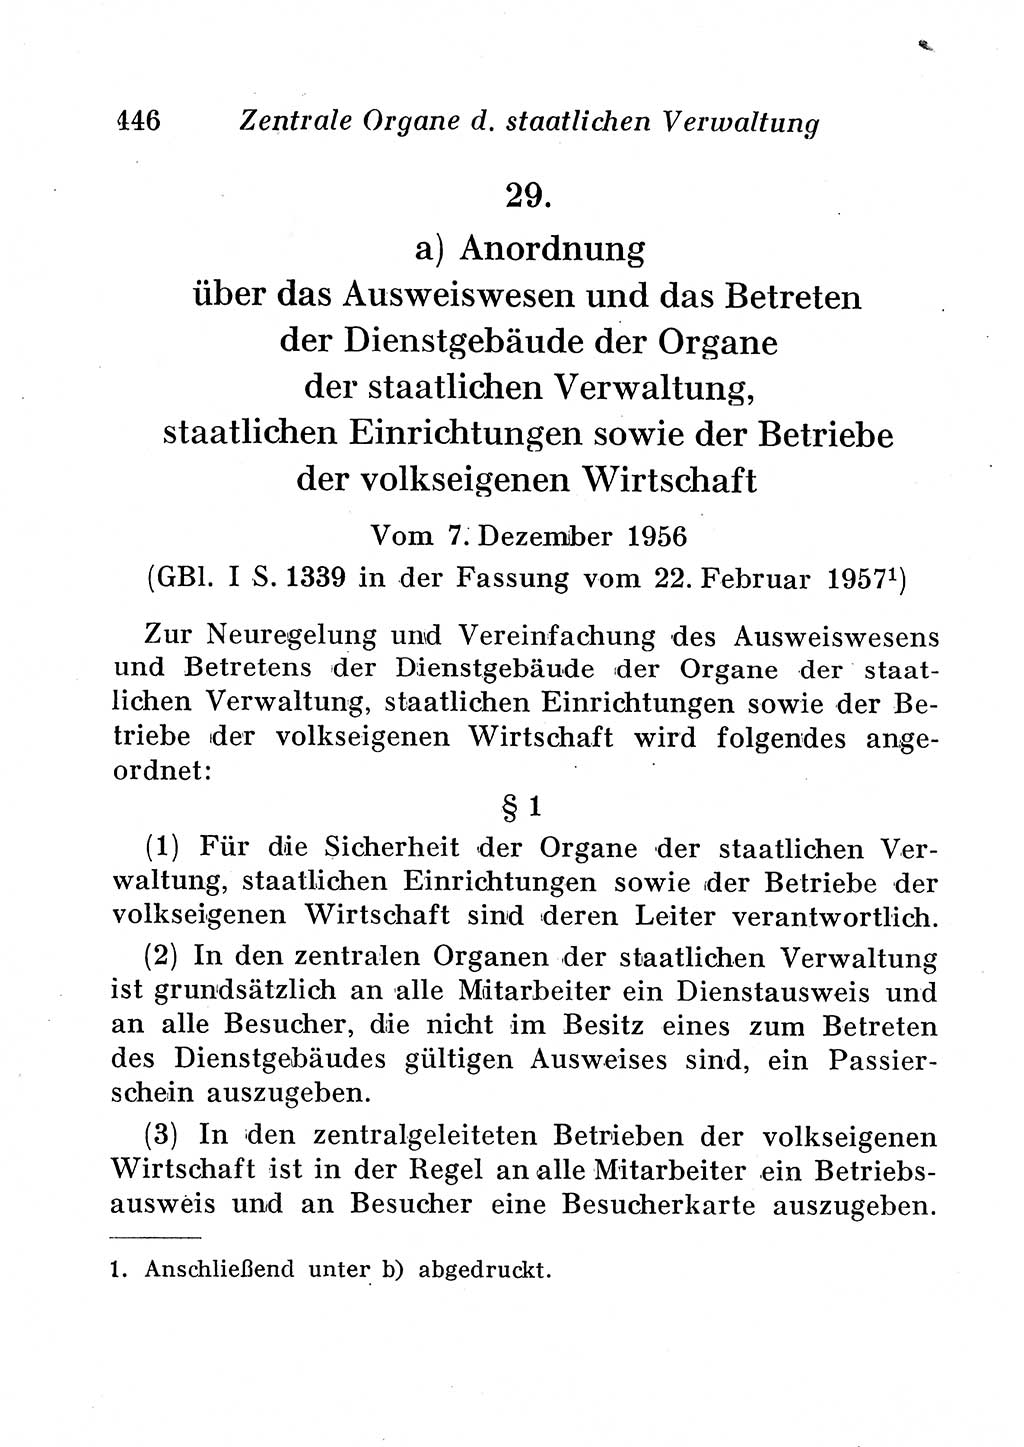 Staats- und verwaltungsrechtliche Gesetze der Deutschen Demokratischen Republik (DDR) 1958, Seite 446 (StVerwR Ges. DDR 1958, S. 446)